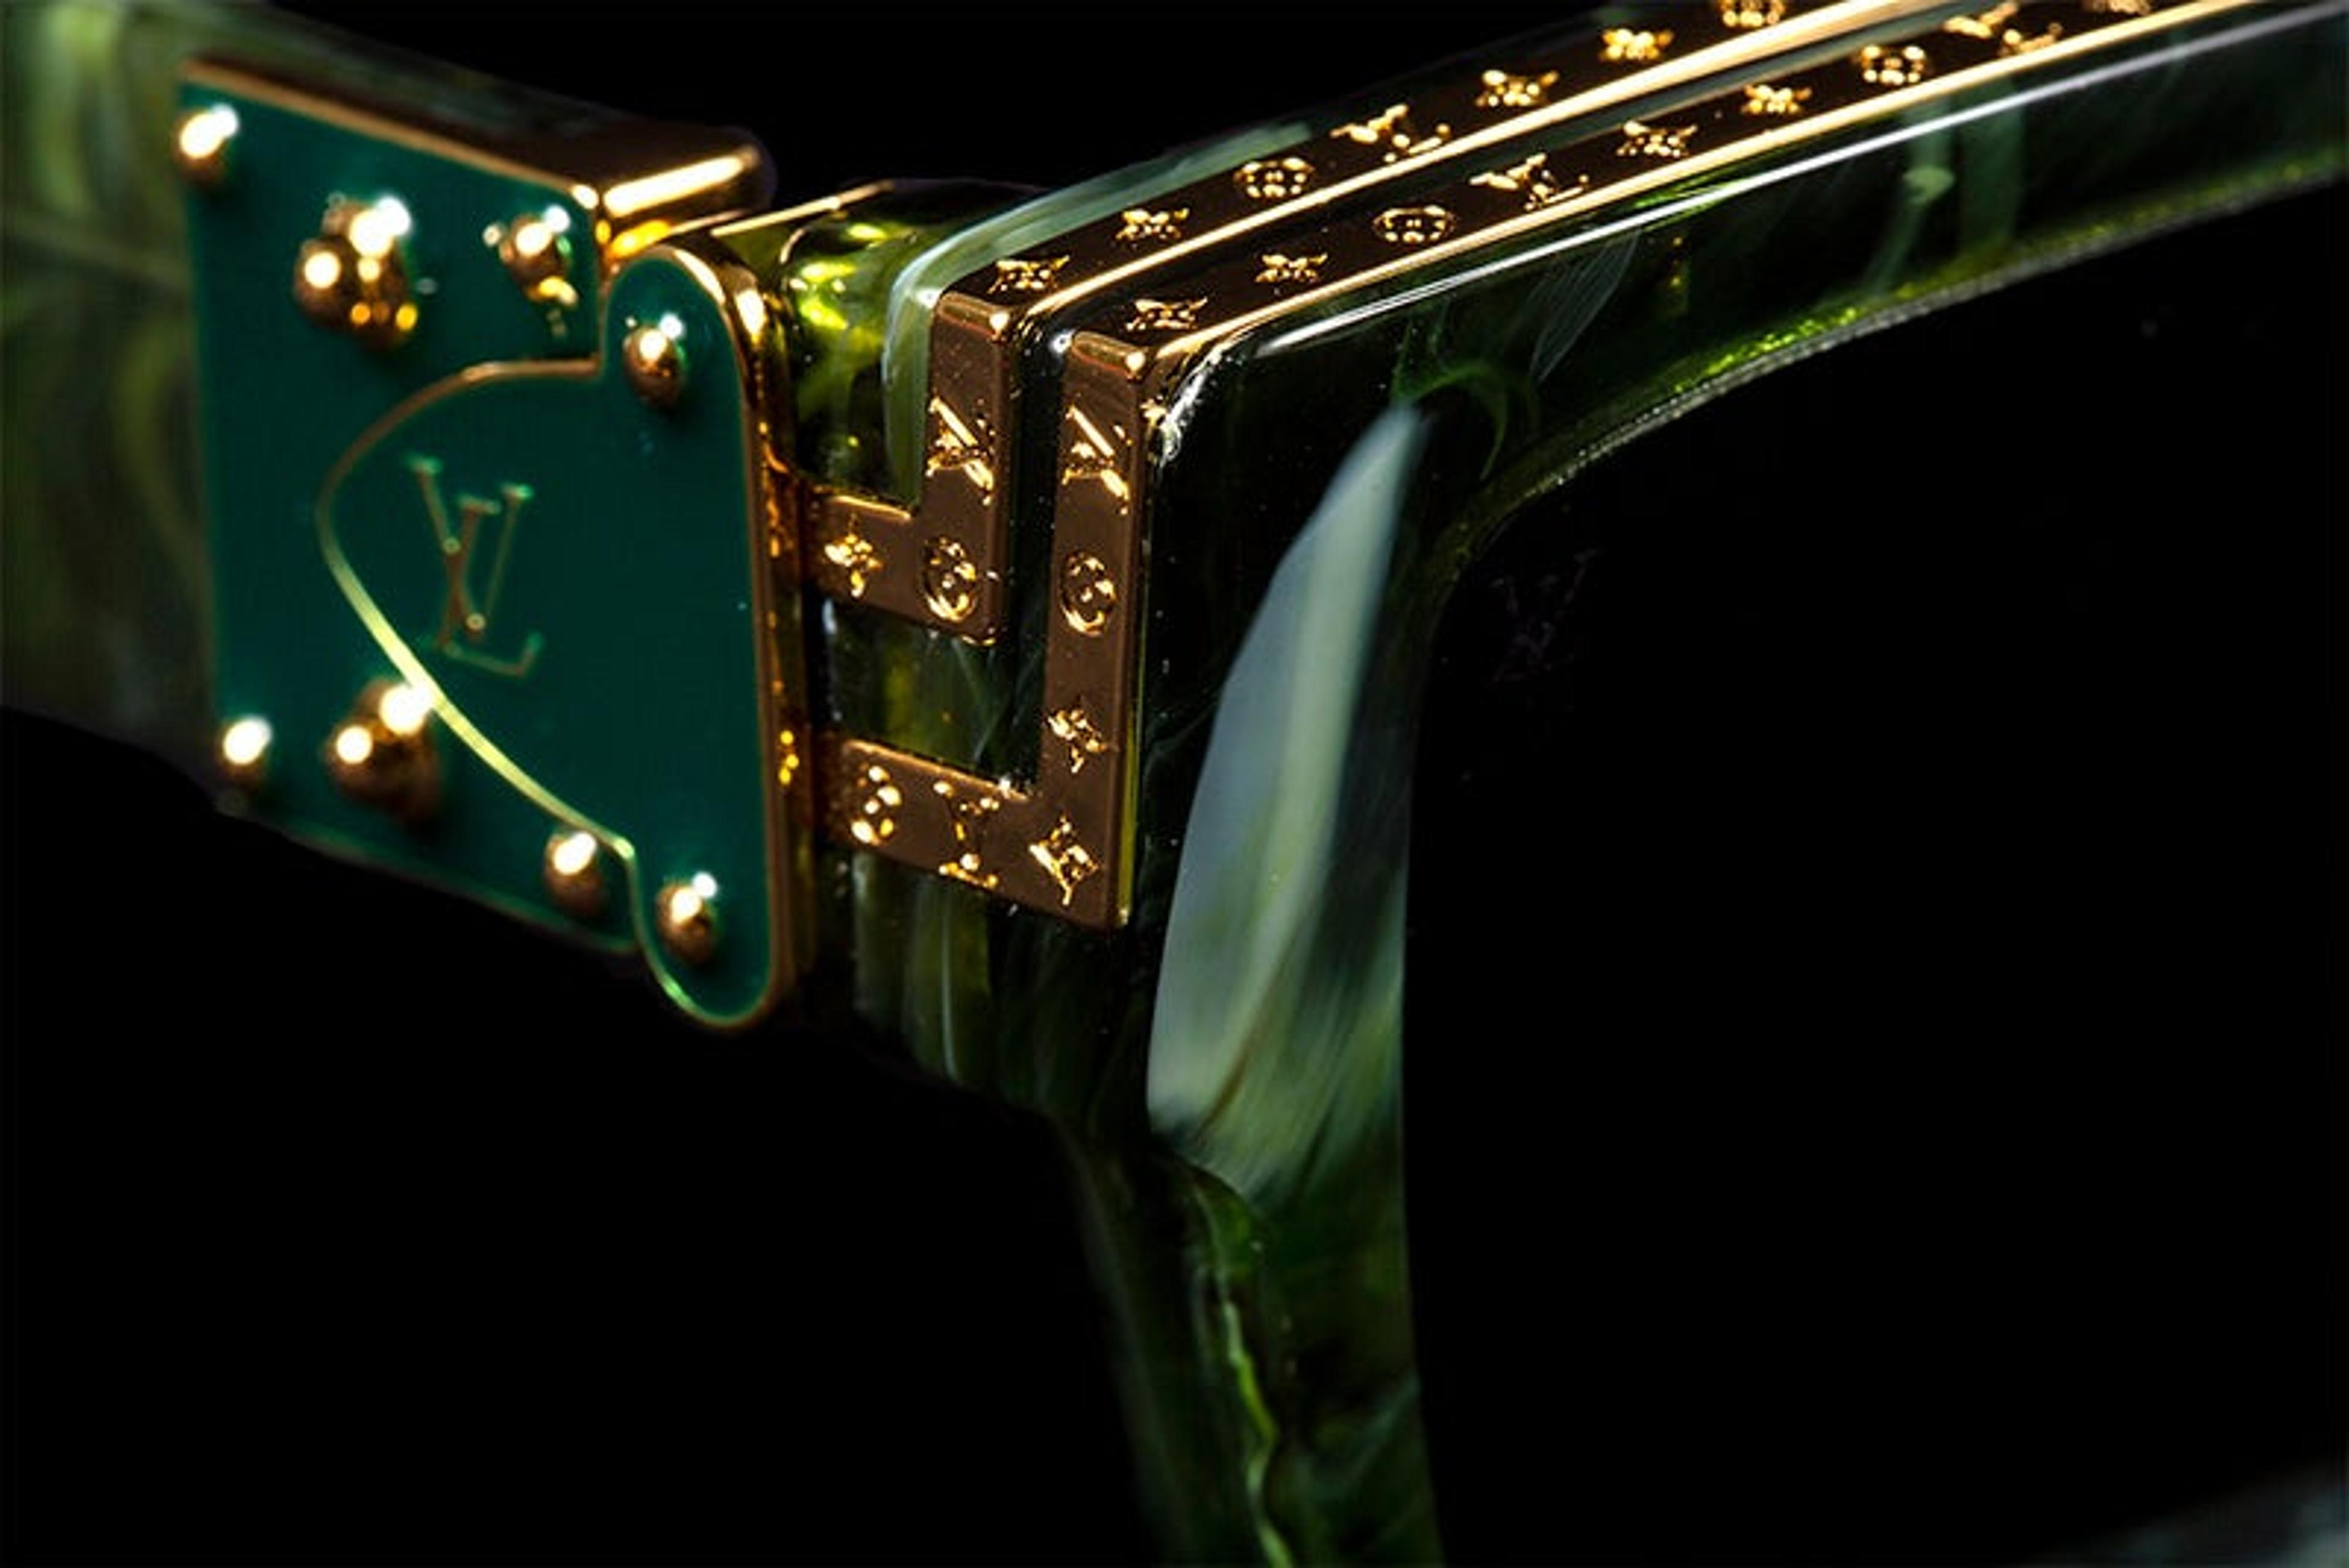 Louis Vuitton 1.1 Millionaires Sunglasses Pale Green